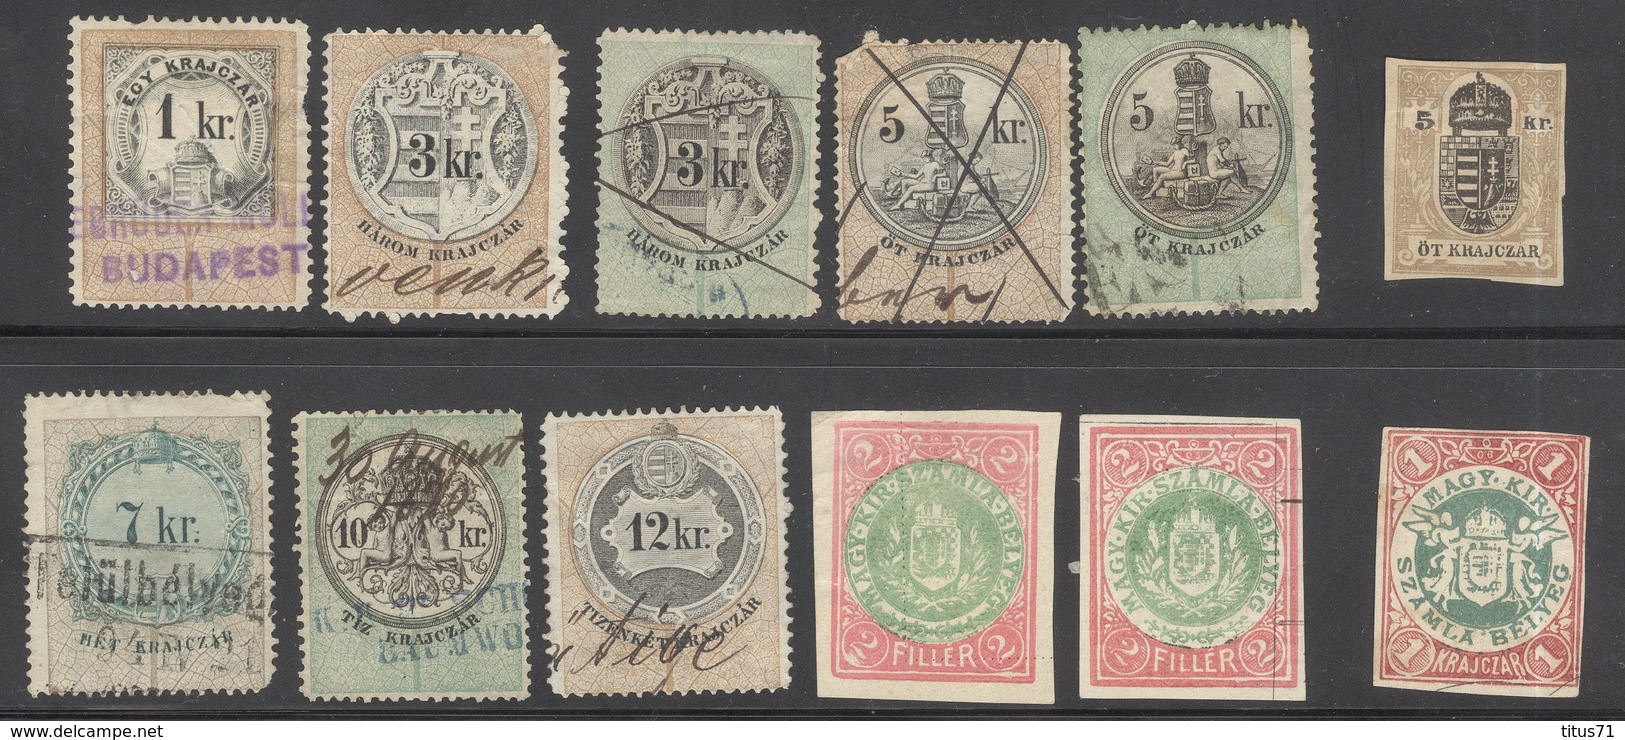 Lot De Timbres Fiscaux Hongrie Errinophilie - Revenue Stamps